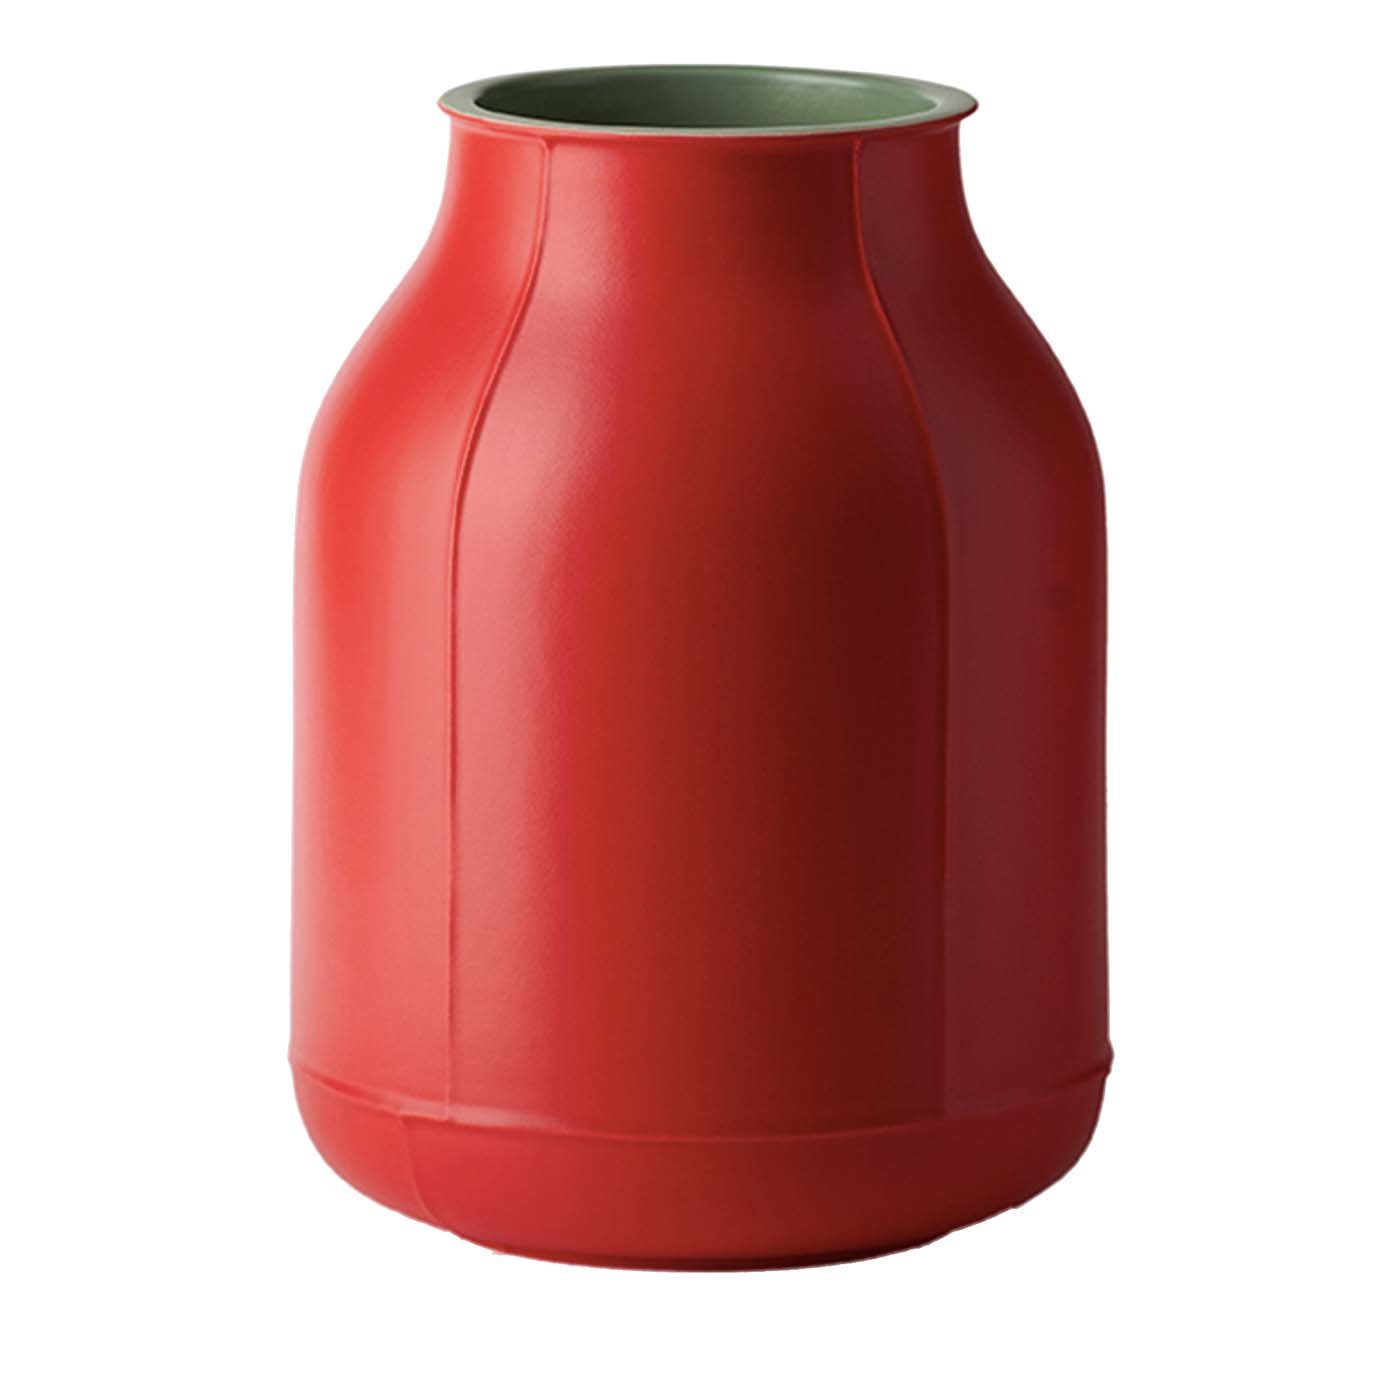 Gran jarrón rojo de Benjamin Hubert - Vista principal